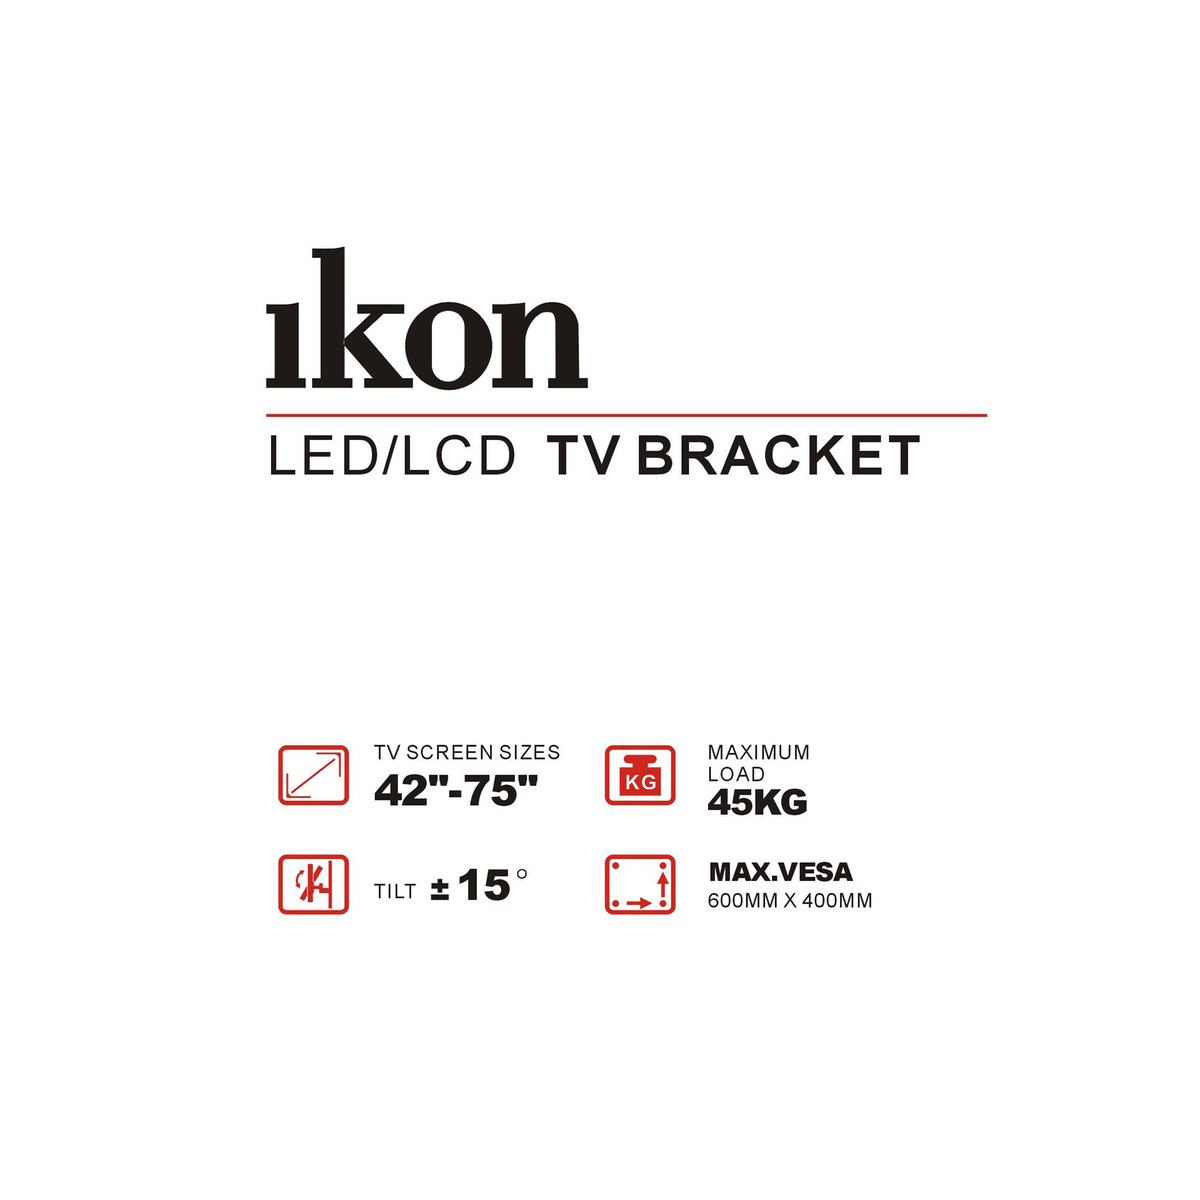 Ikon Tilt LCD/LED TV Bracket, 42 to 75 inches, Black, IKTS4276